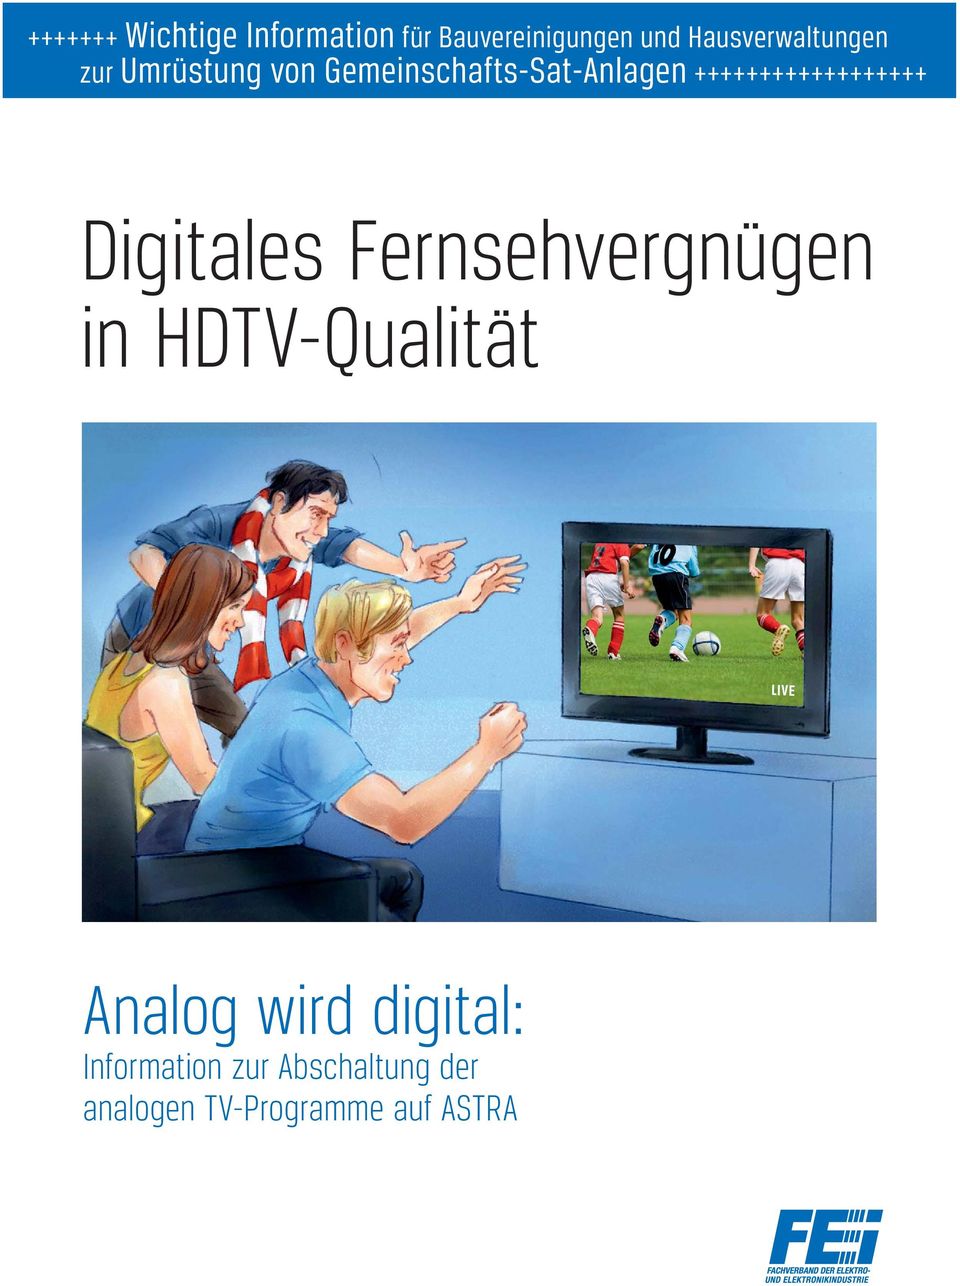 ++++++++++++++++++ Digitales Fernsehvergnügen in HDTV-Qualität